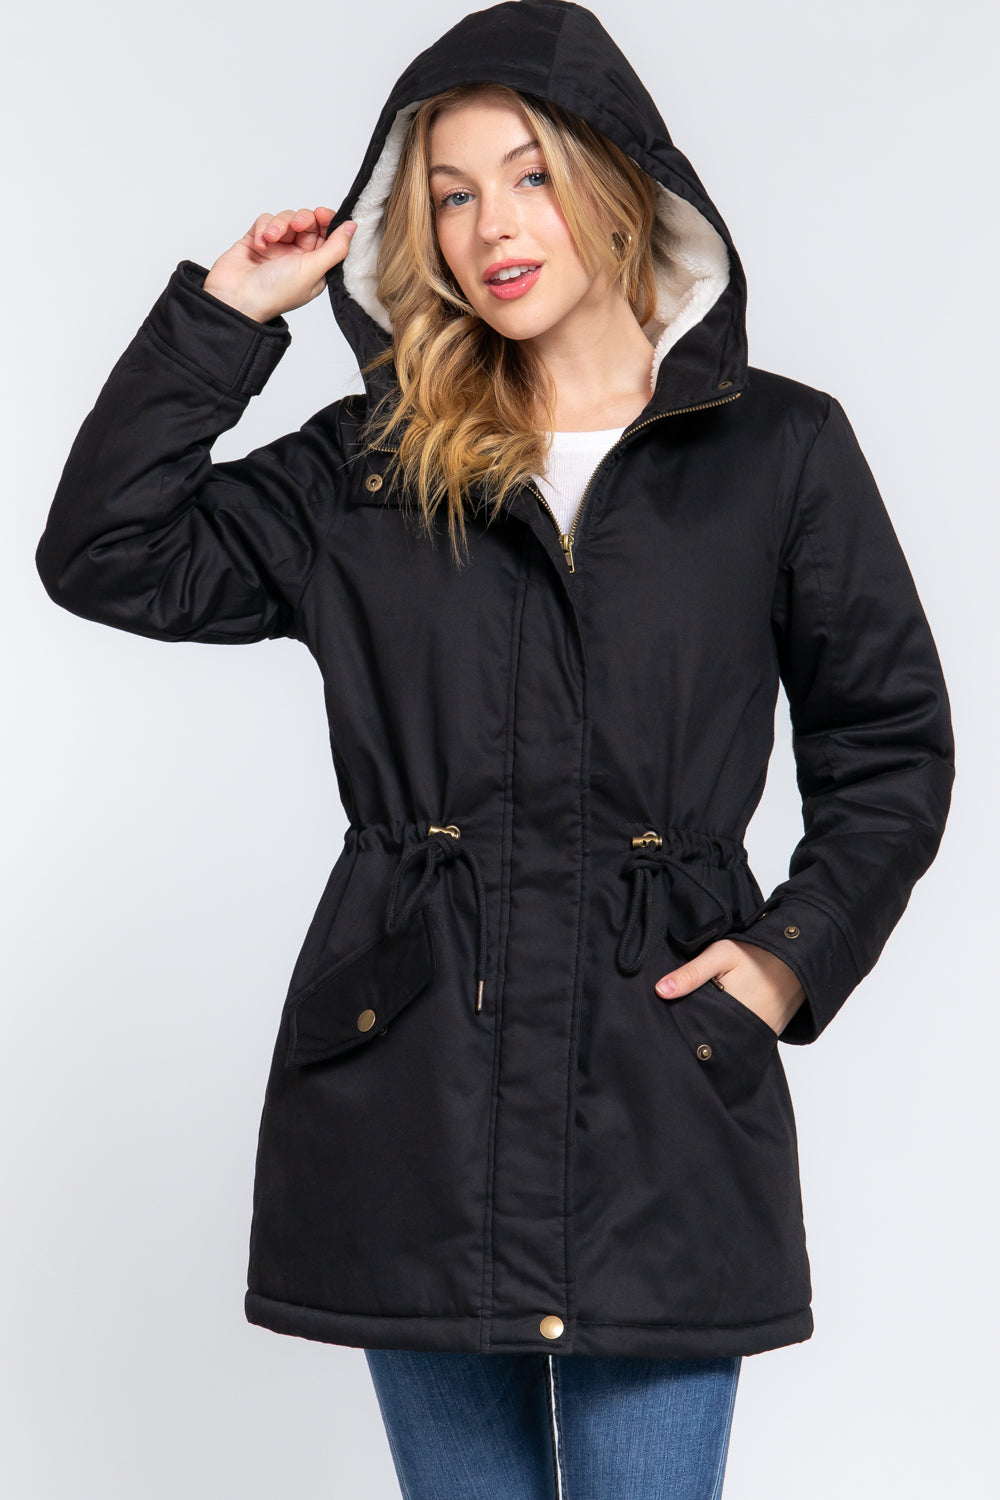 Fleece Lined Fur Hoodie Utility Jacket - JACKETS & OUTWEAR - Black